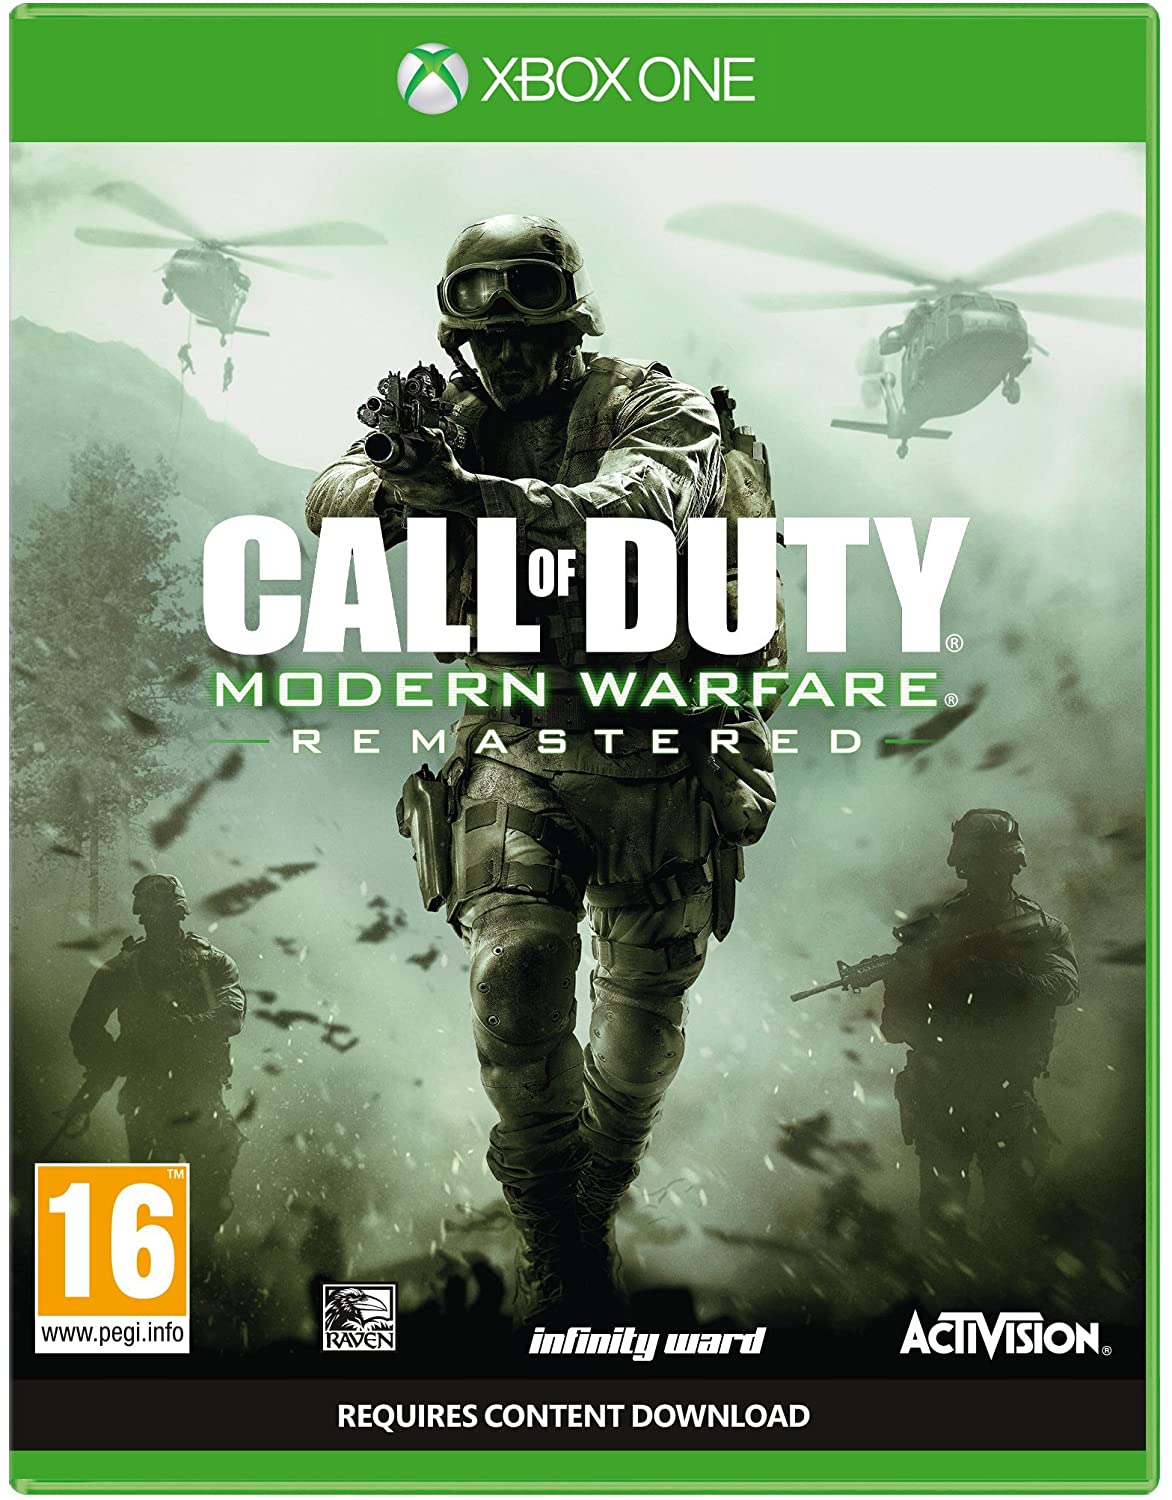 call of duty modern warfare xbox one digital download